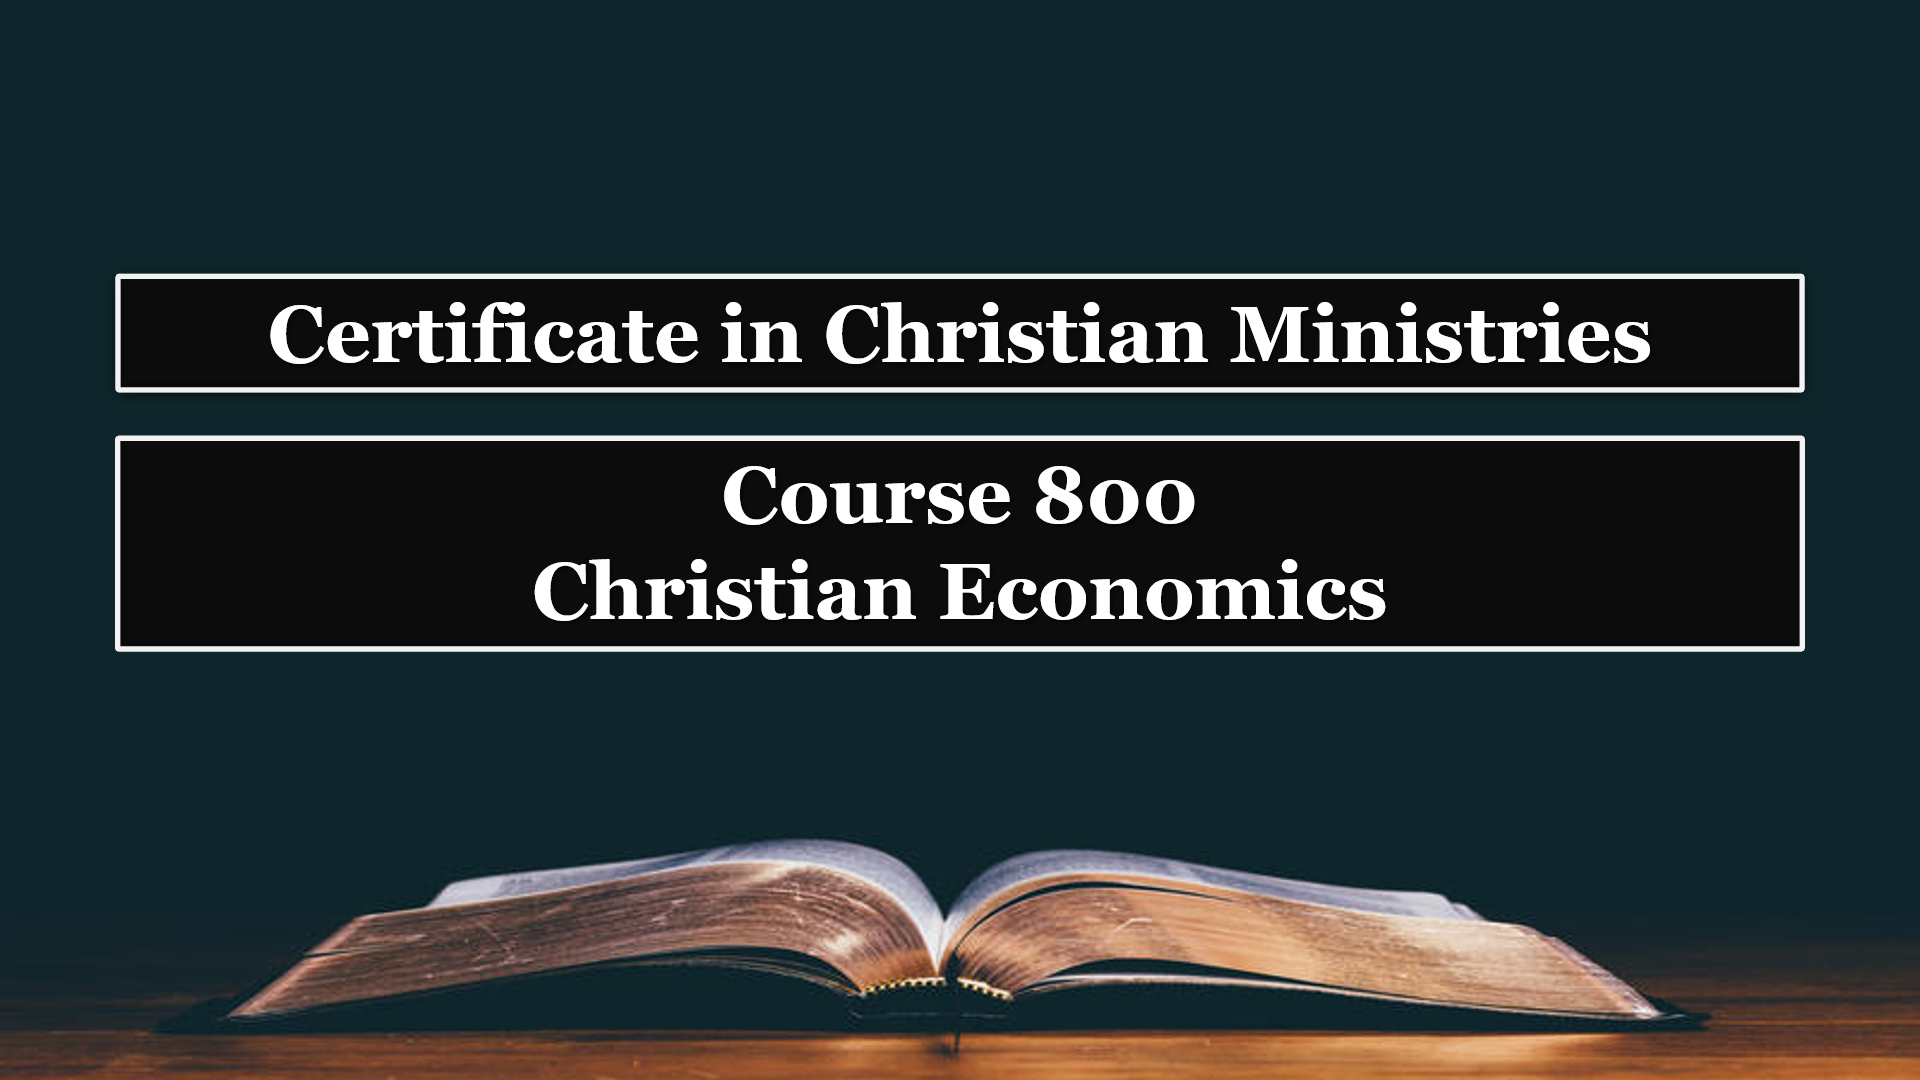 Course 800: Christian Economics